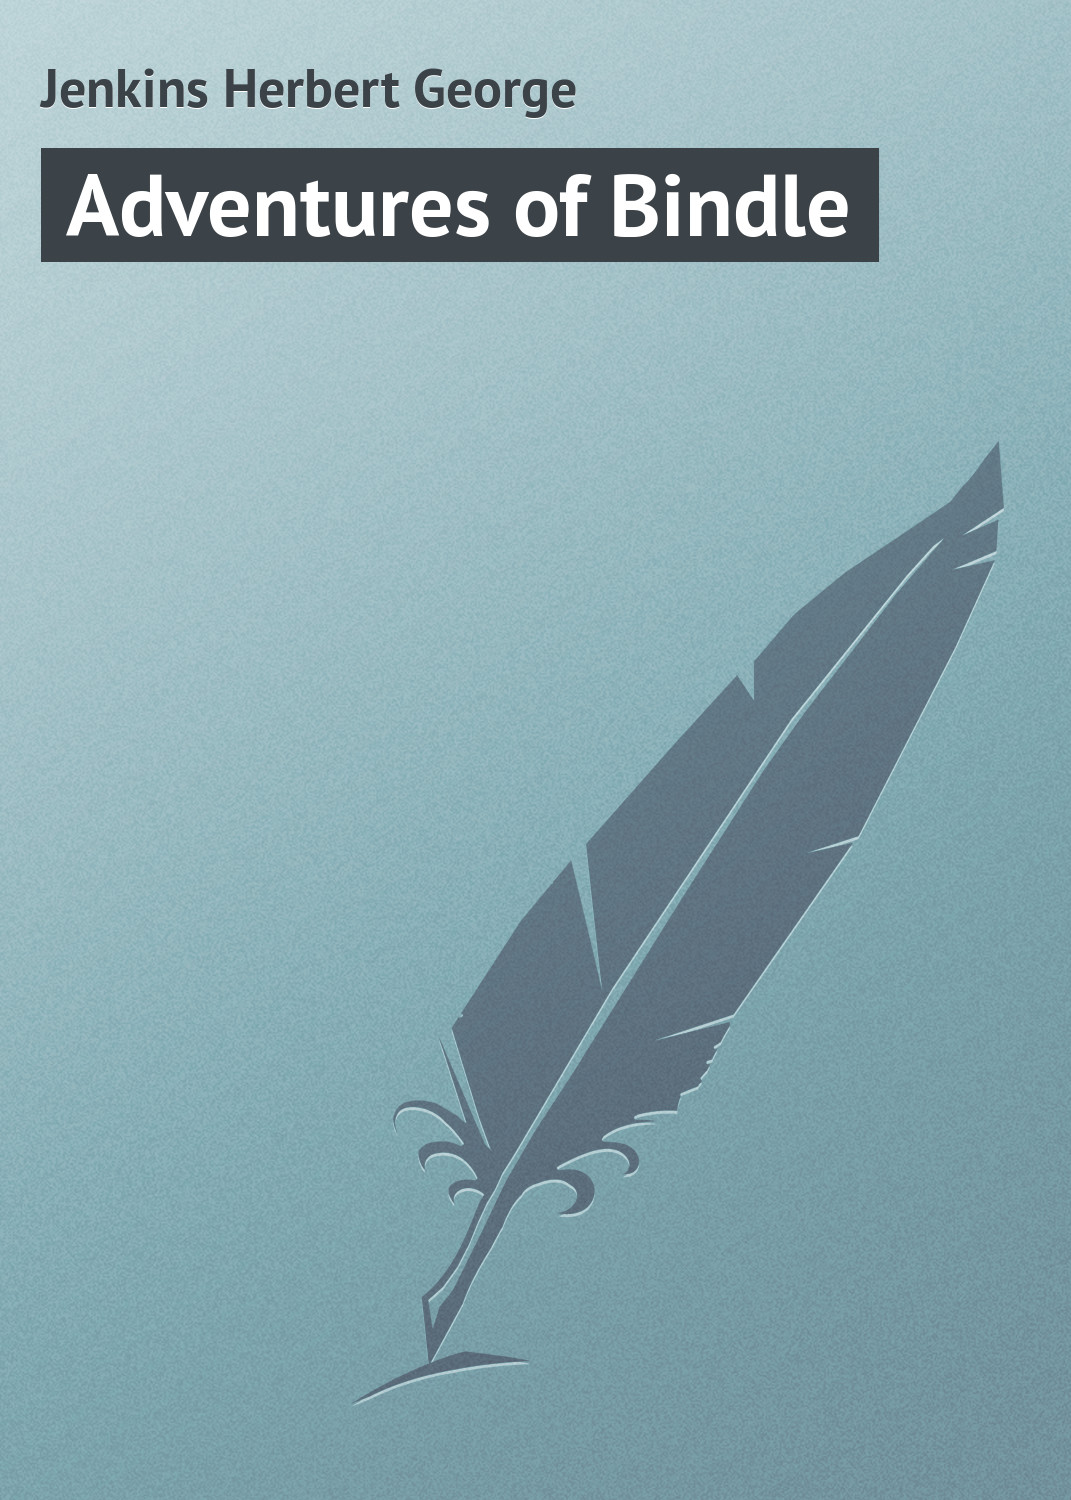 Книга Adventures of Bindle из серии , созданная Herbert Jenkins, может относится к жанру Зарубежная классика, Зарубежный юмор. Стоимость электронной книги Adventures of Bindle с идентификатором 23164547 составляет 5.99 руб.